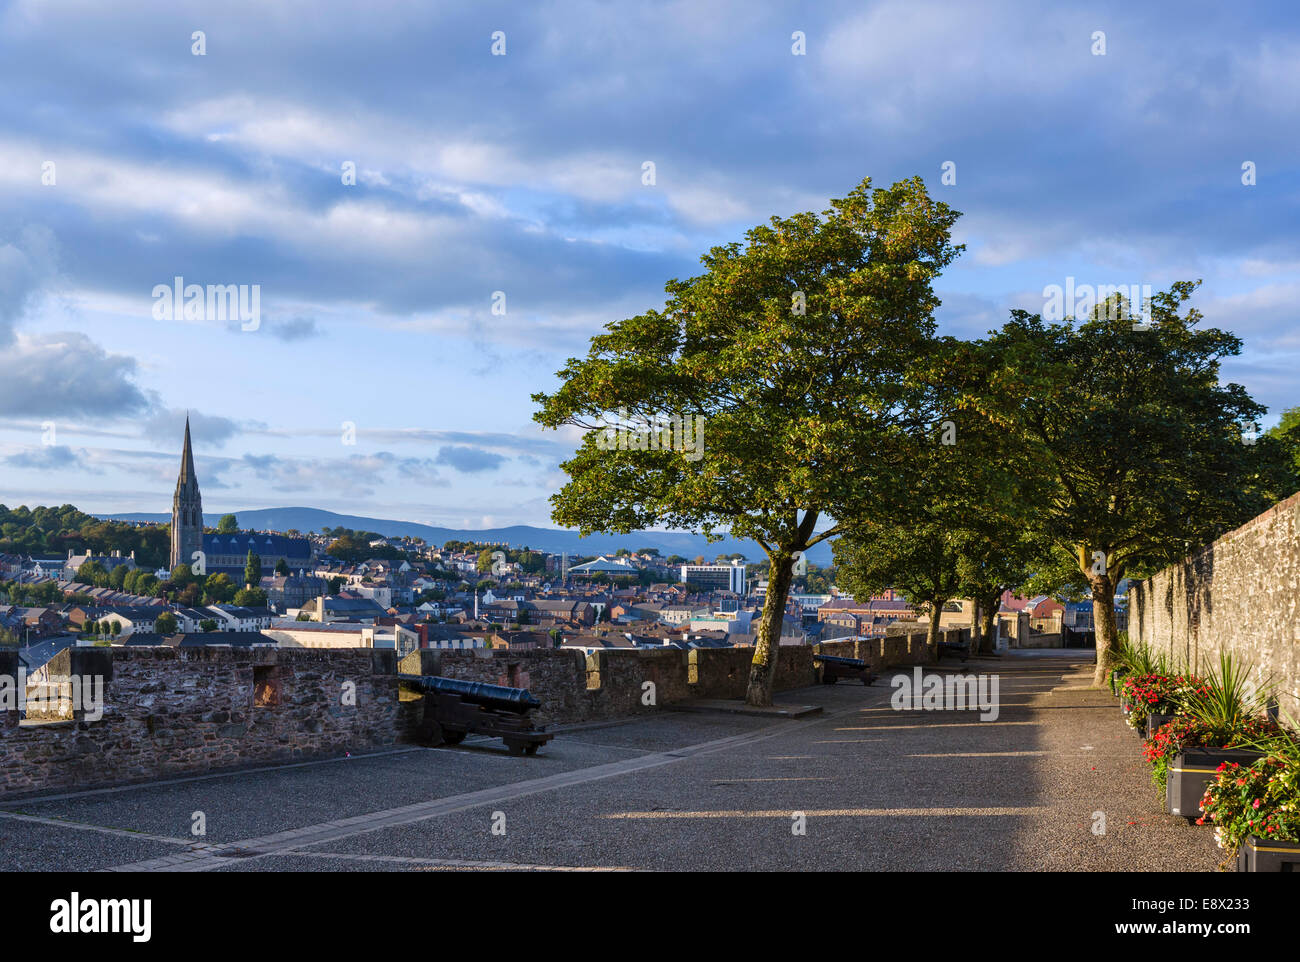 Vieux remparts de la ville, en début de soirée avec la Cathédrale St Eugene dans la distance, Derry, County Londonderry, Irlande du Nord, Royaume-Uni Banque D'Images